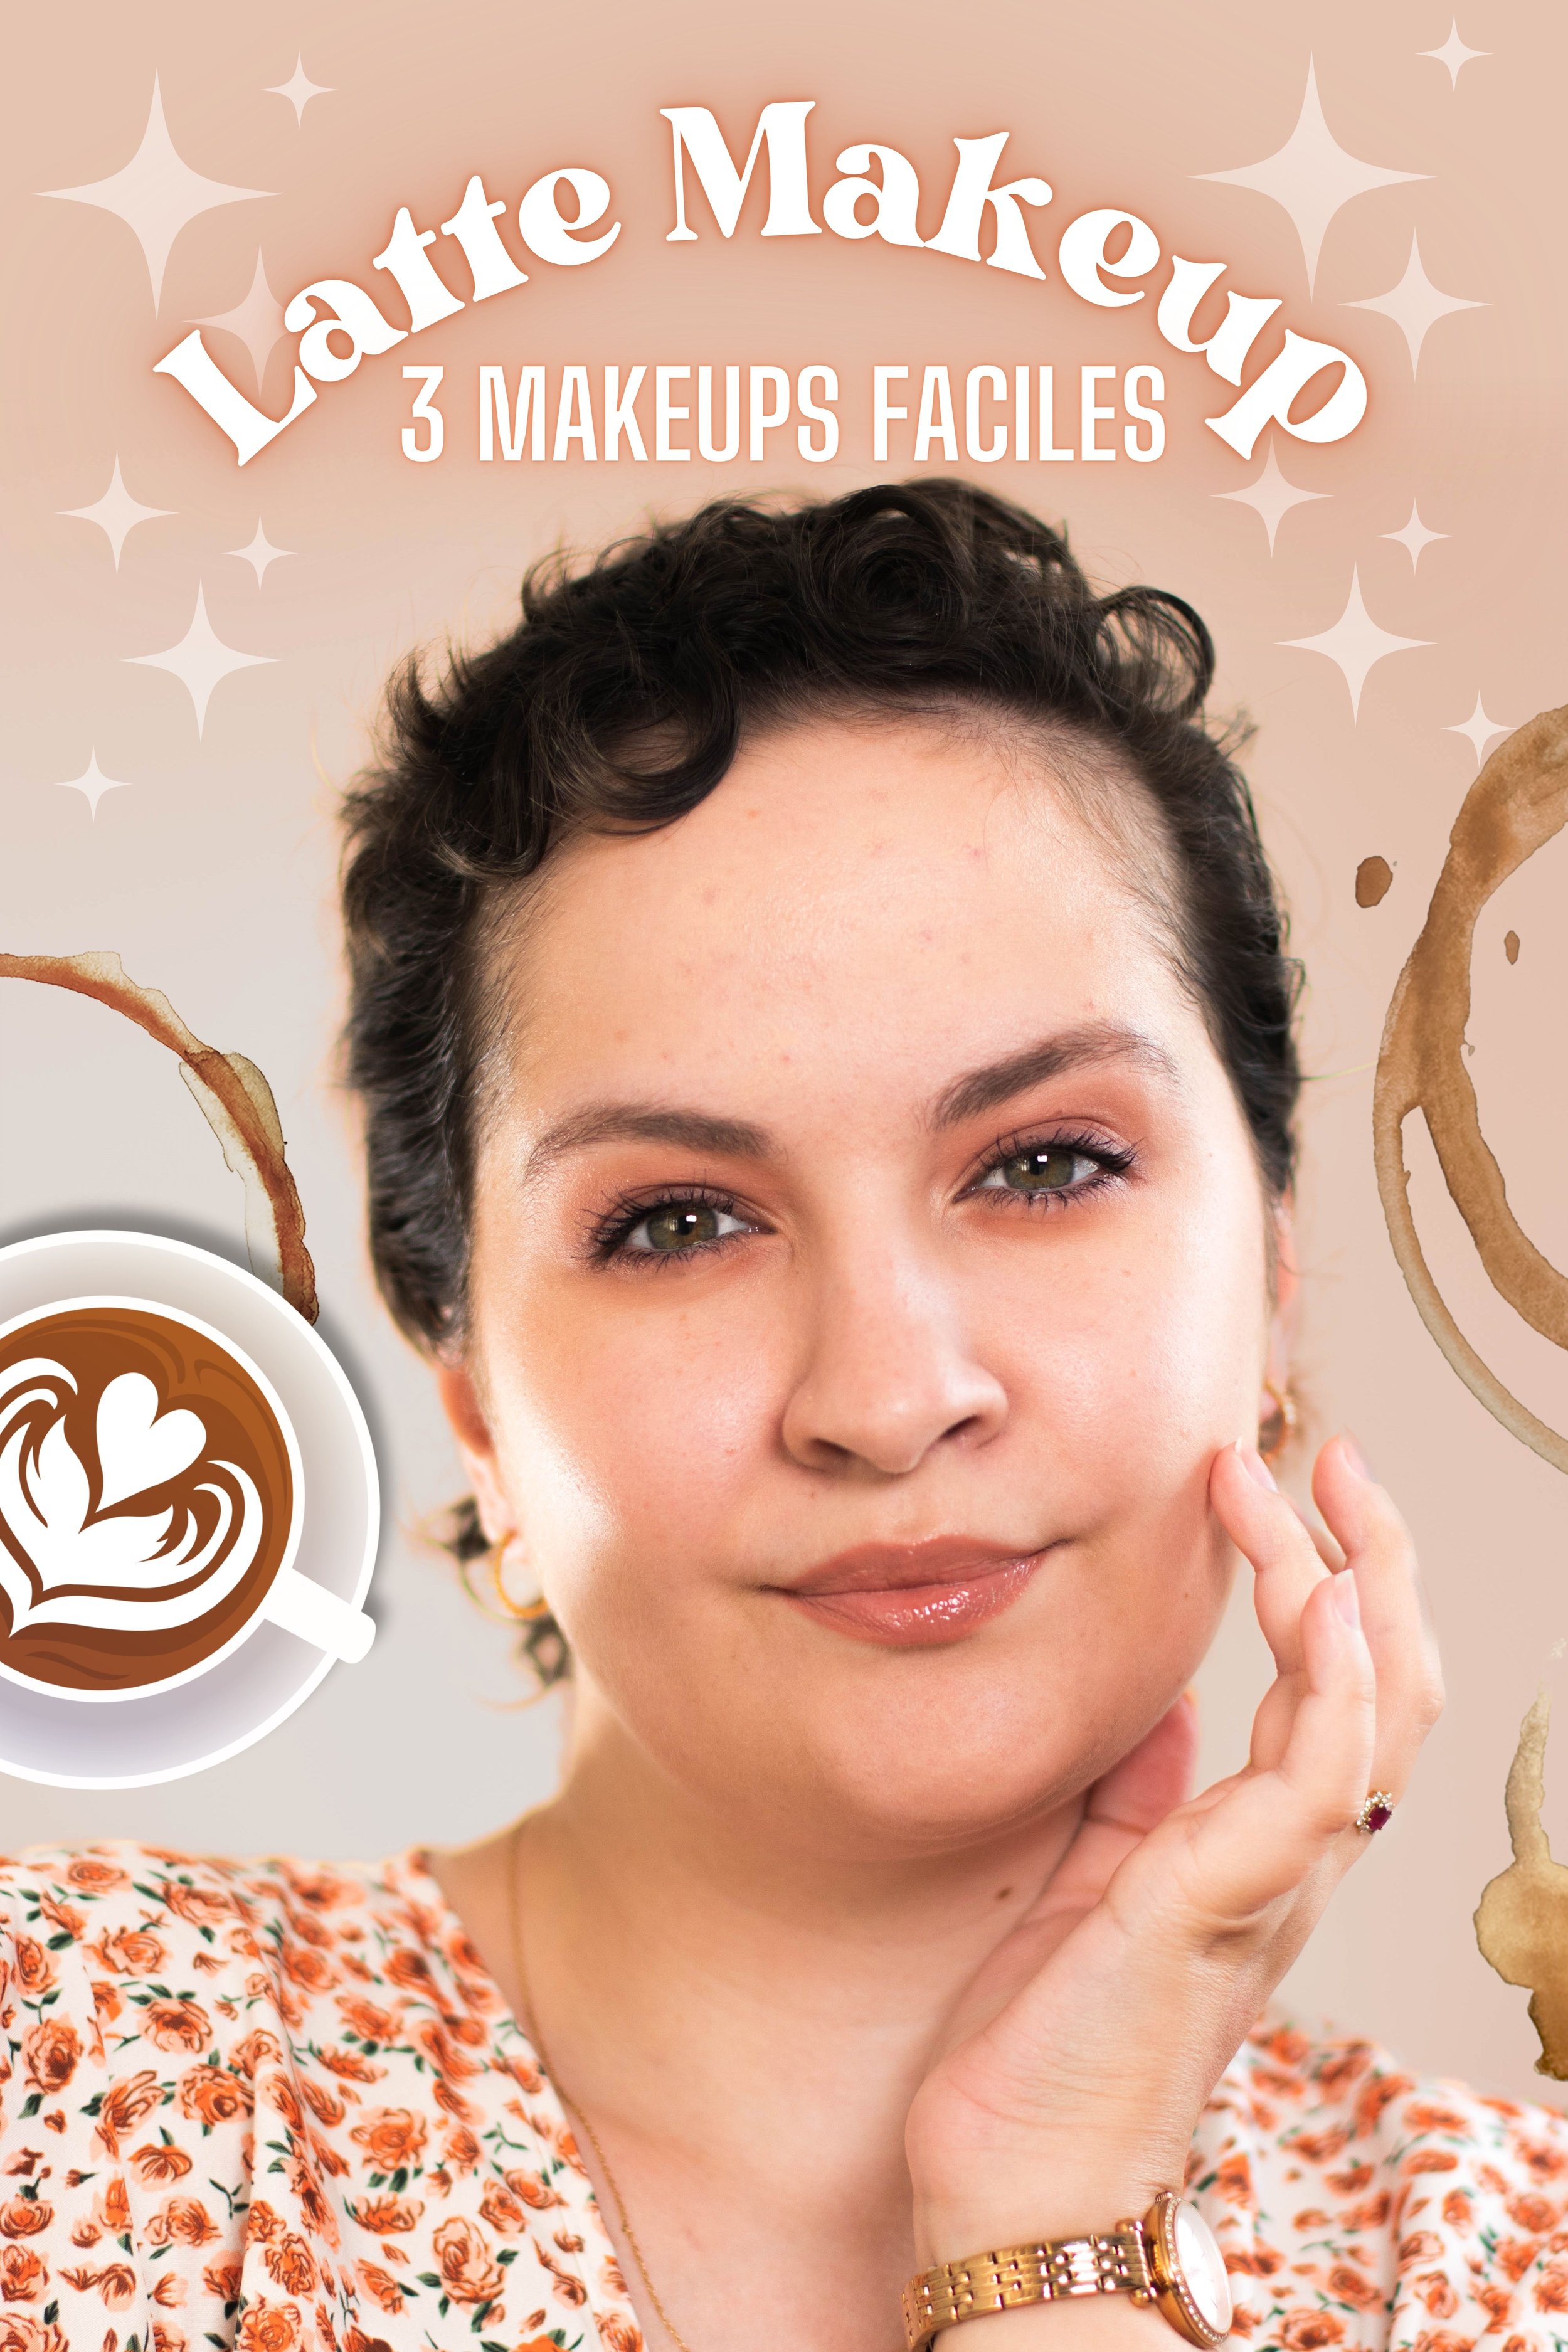 Latte make-up » : voici la nouvelle tendance maquillage à adopter pour un  look glamour et